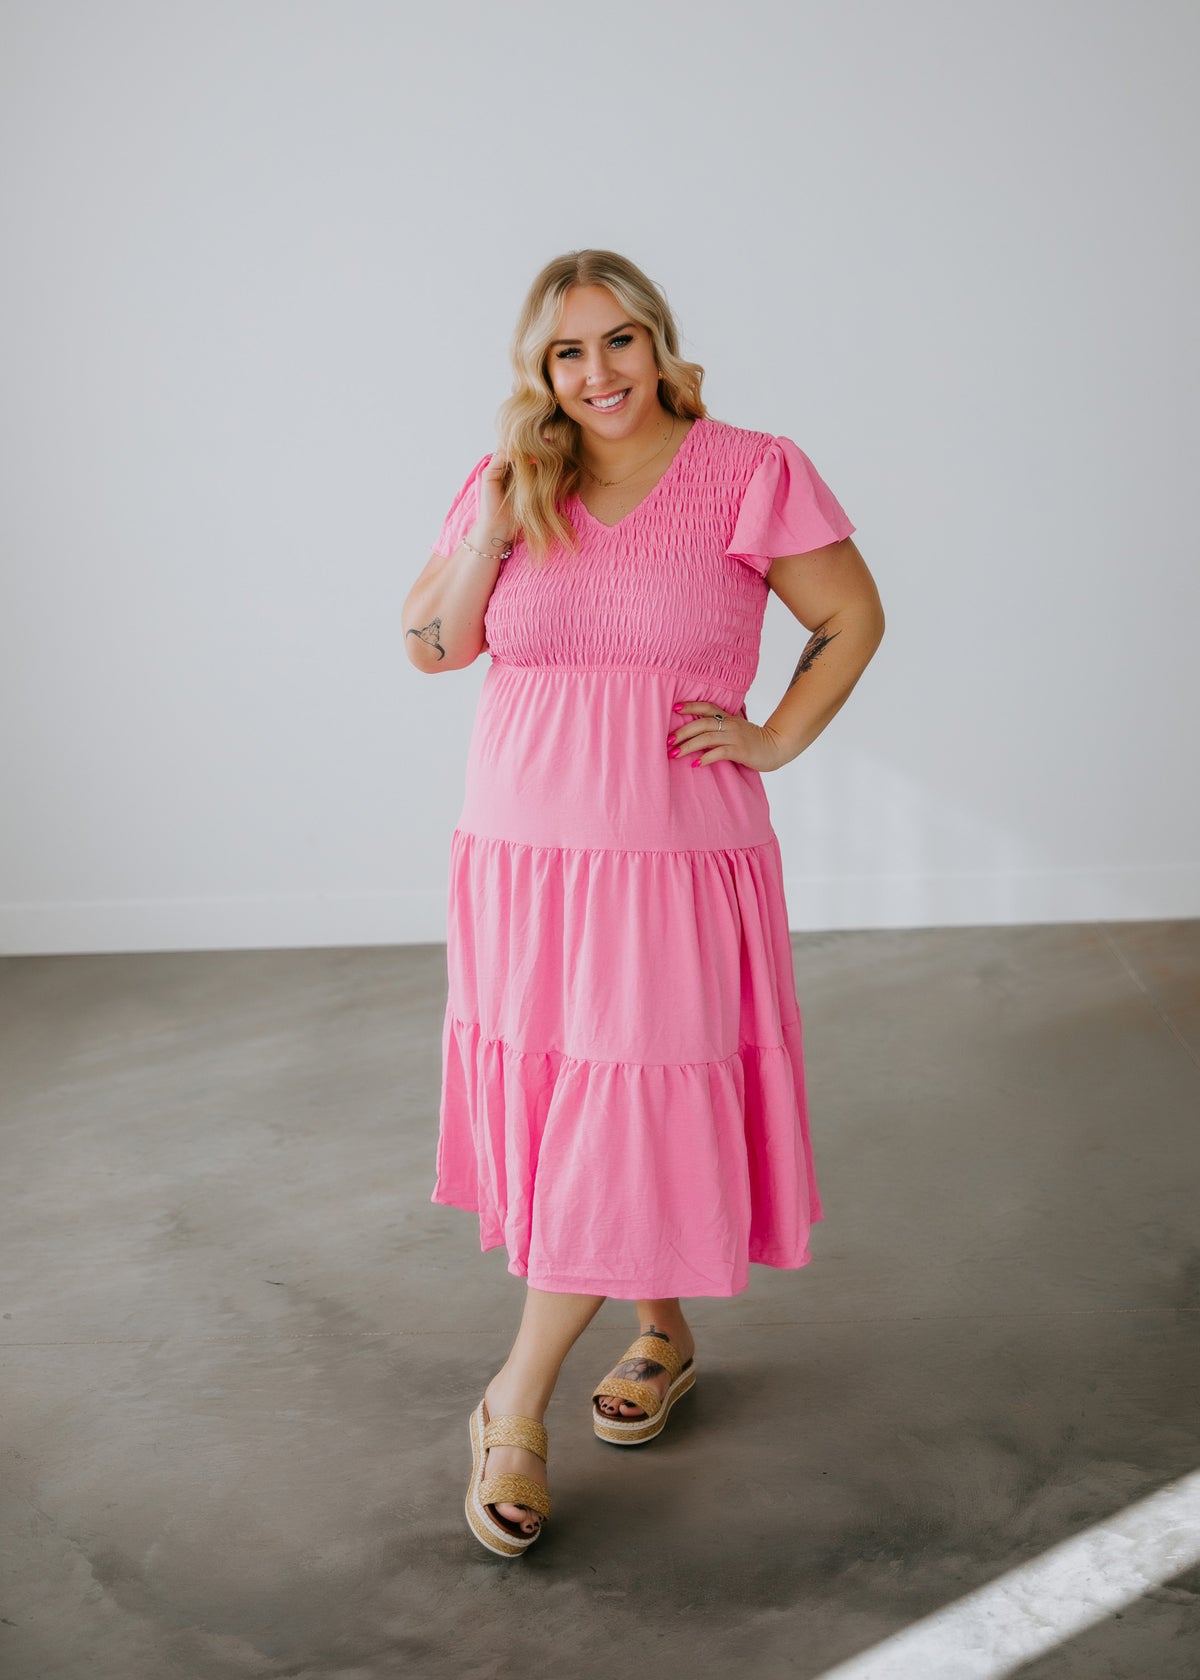 Coast Lori May Maxi Dress in Blush/Pink Curve Plus Size 18